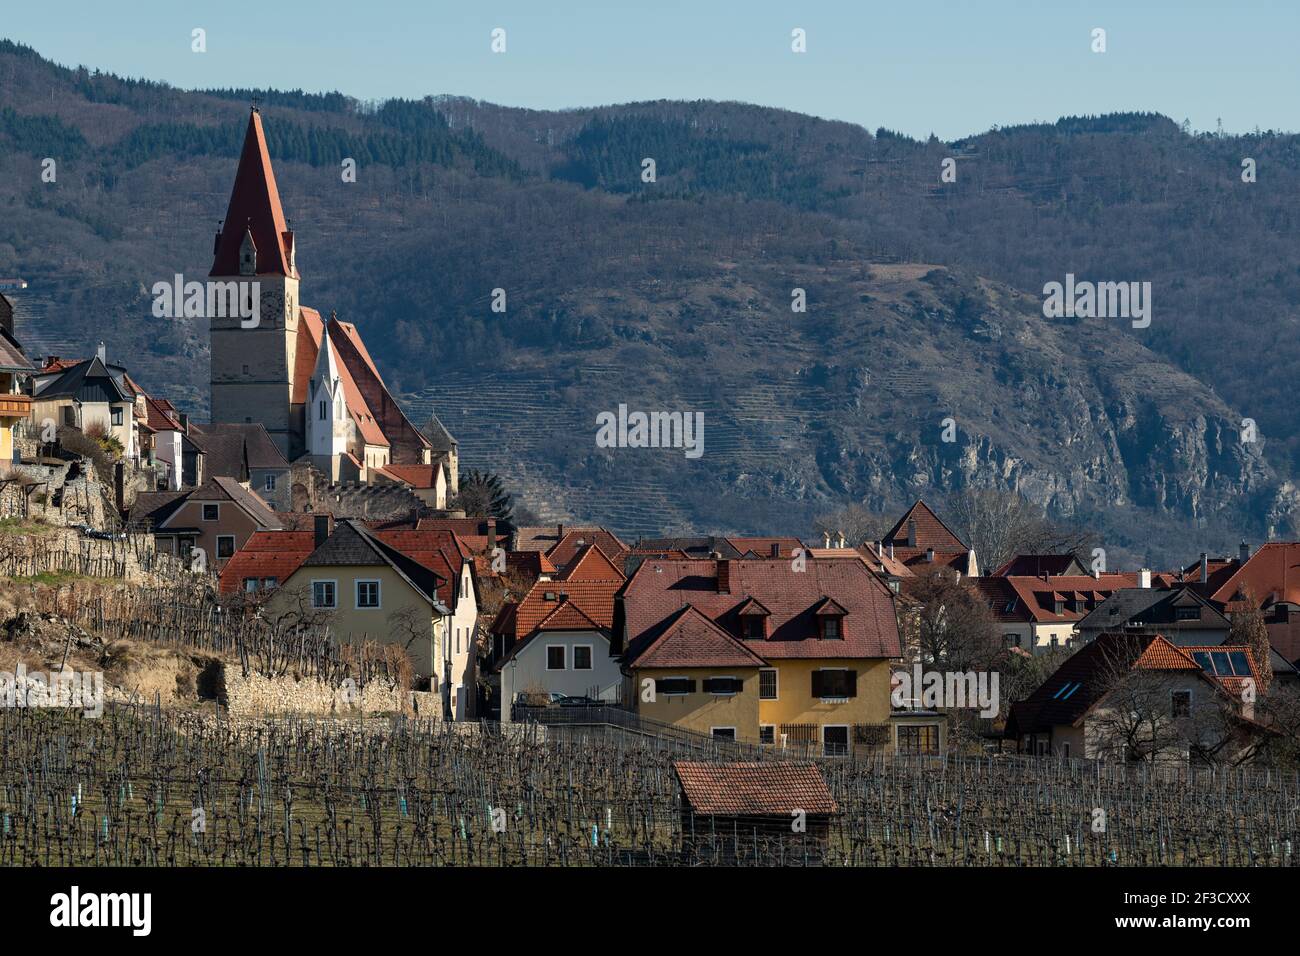 Weissenkirchen Wachau Austria on a sunny day in winter, village and vineyards Stock Photo